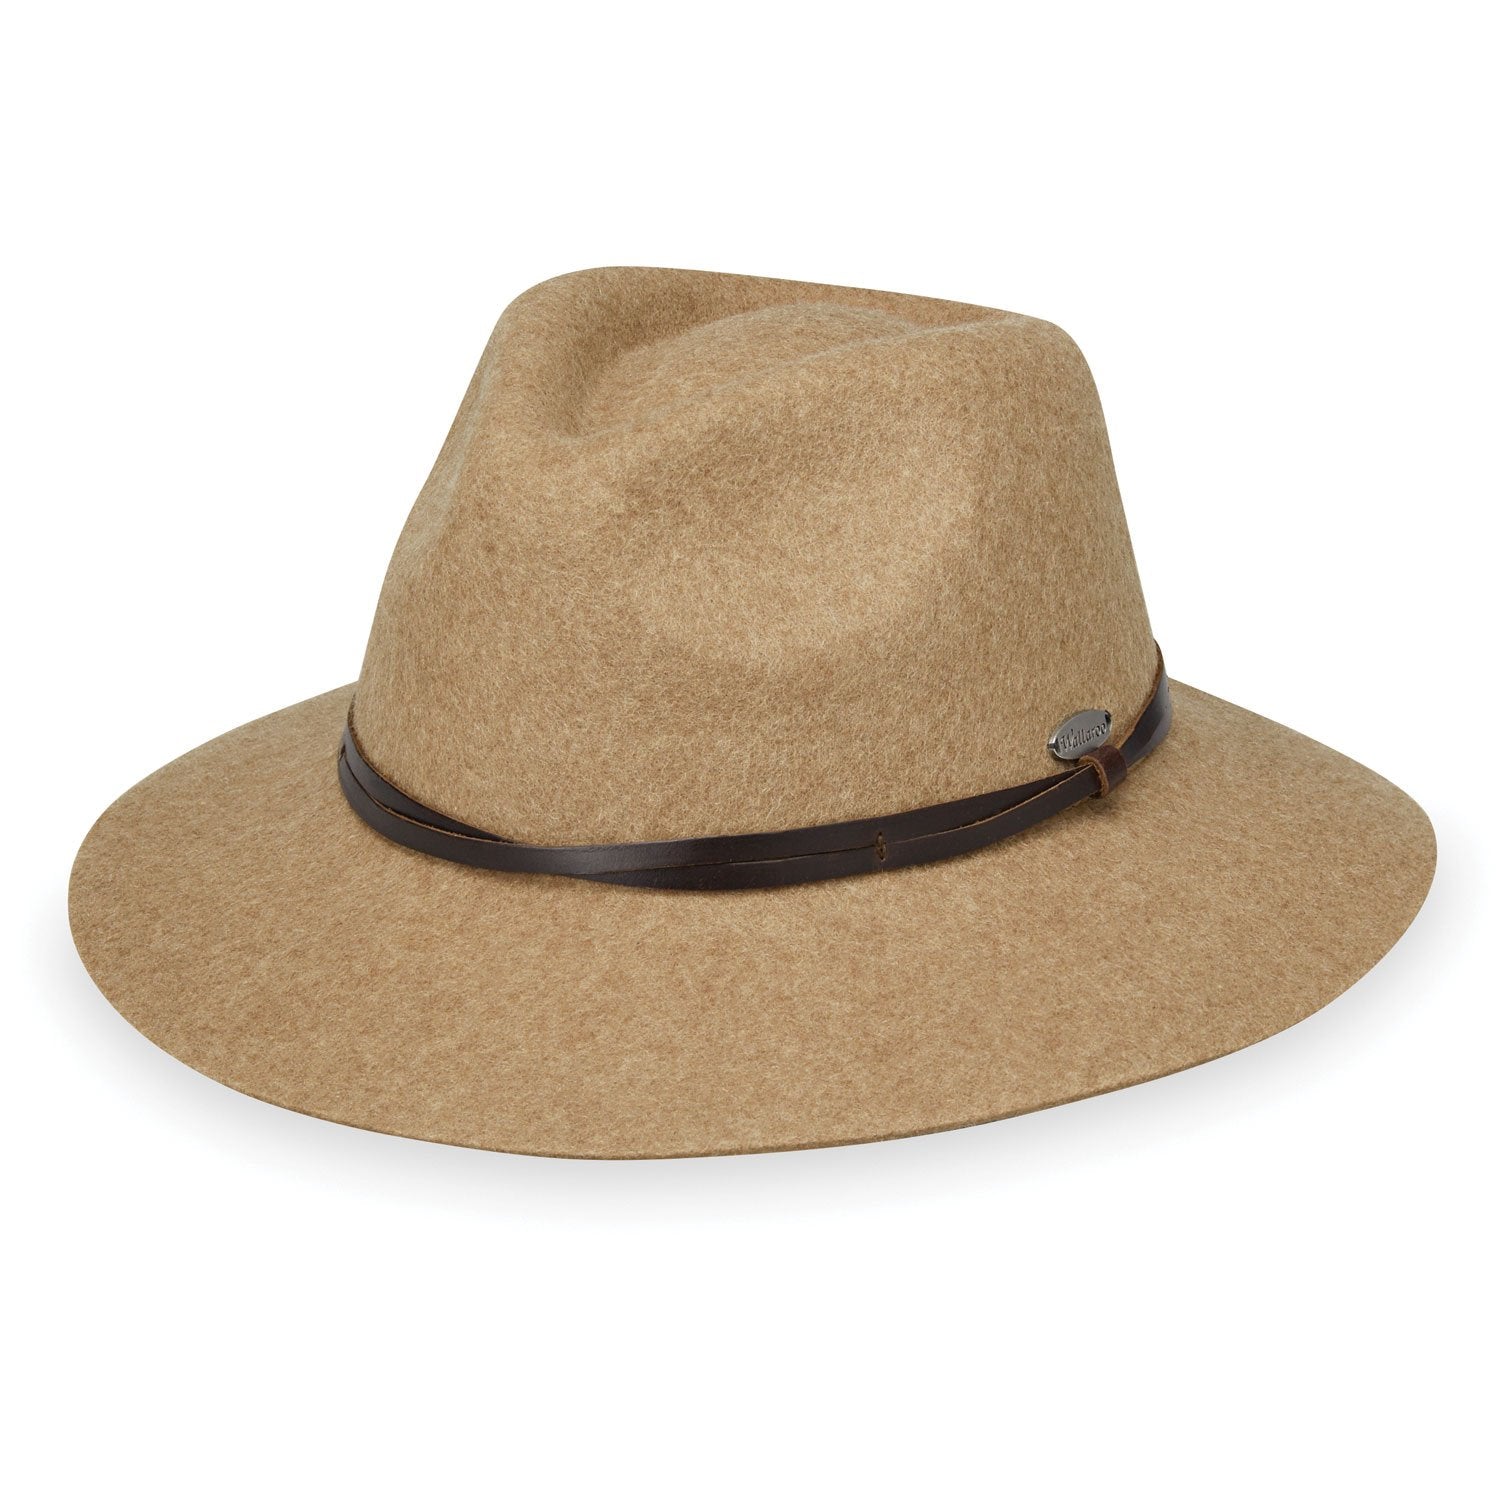 Featuring Aspen Women's Wool Felt Fedora Style Sun Hat in Camel from Wallaroo